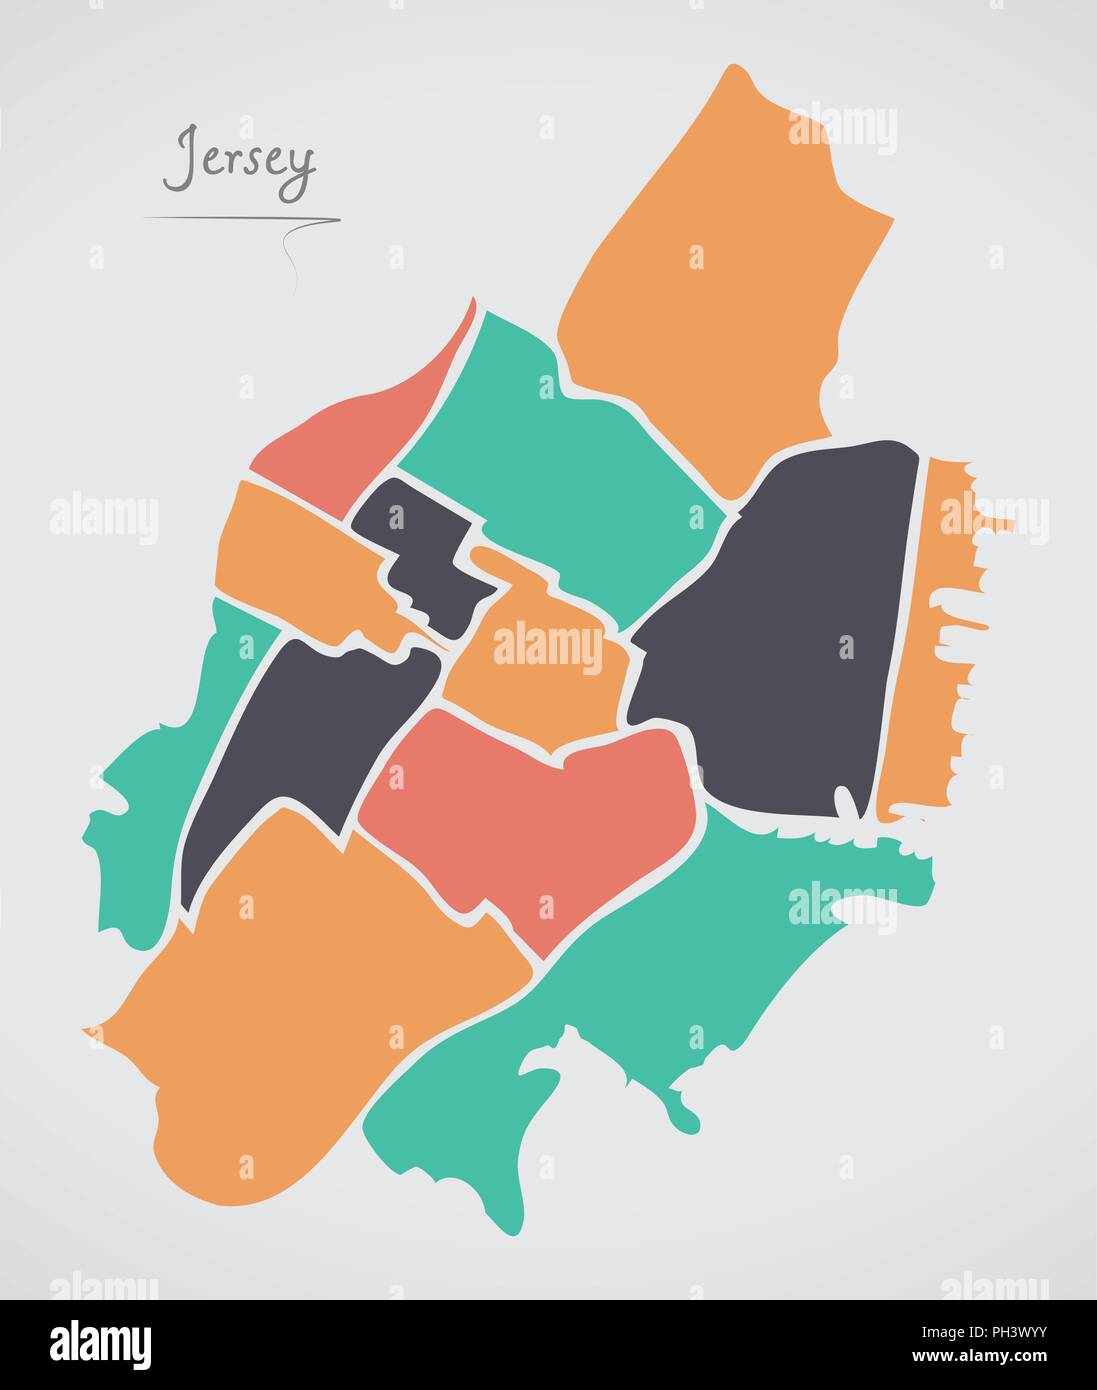 Jersey Nueva Jersey mapa con los barrios y modernas formas redondas Ilustración del Vector